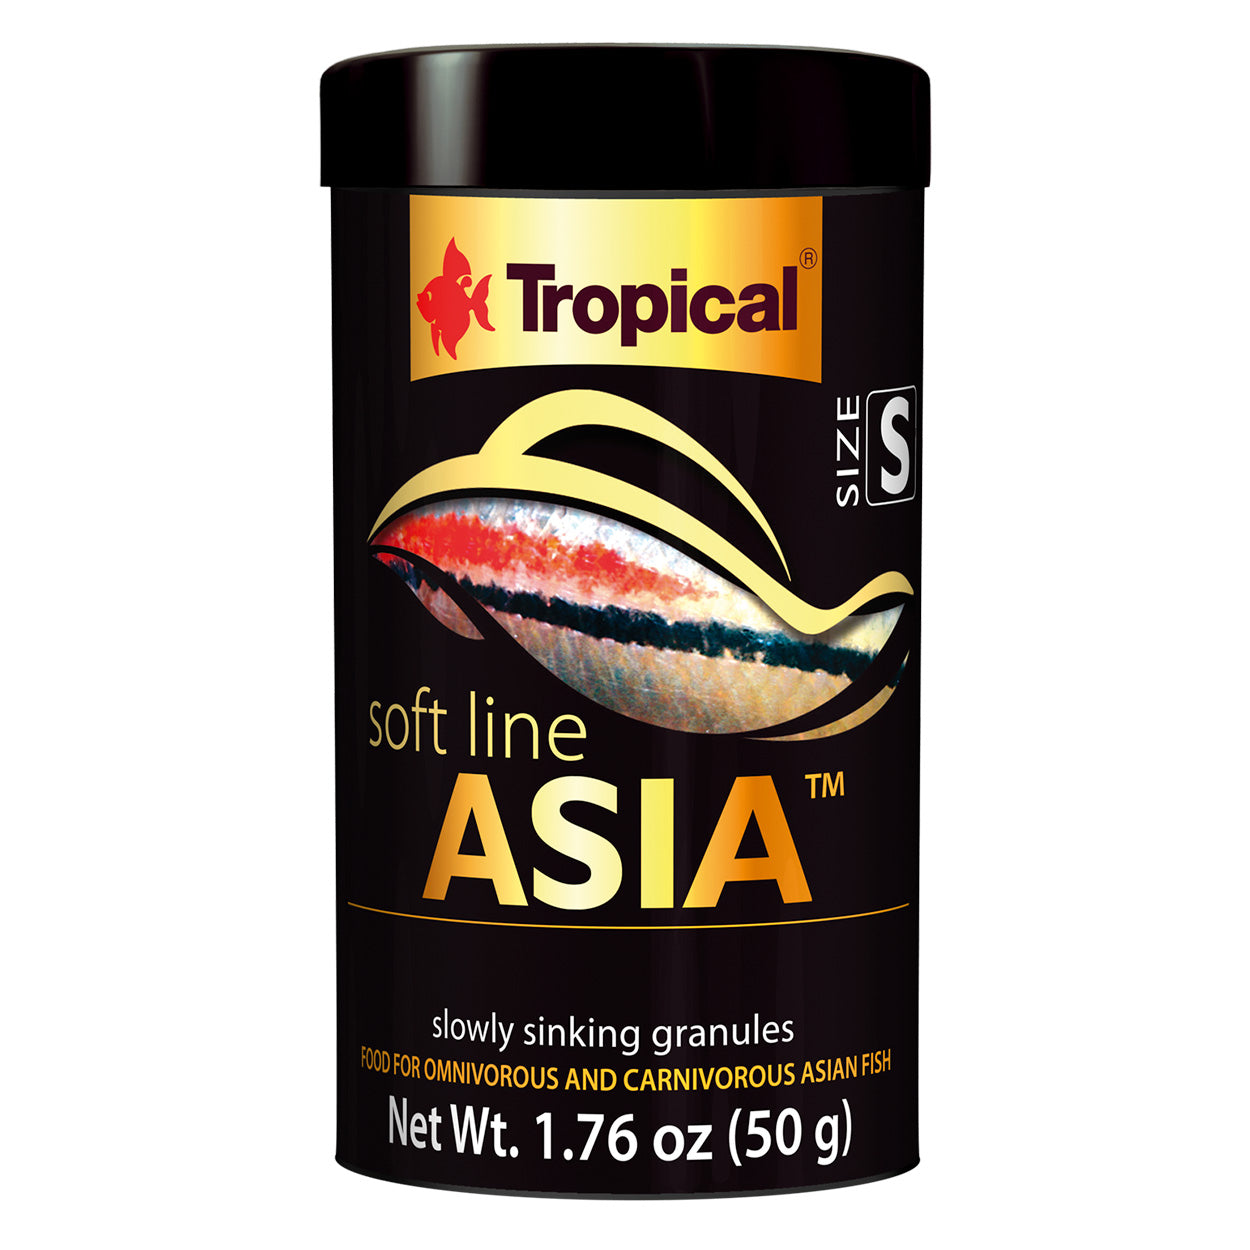 Tropical Soft Line Asia